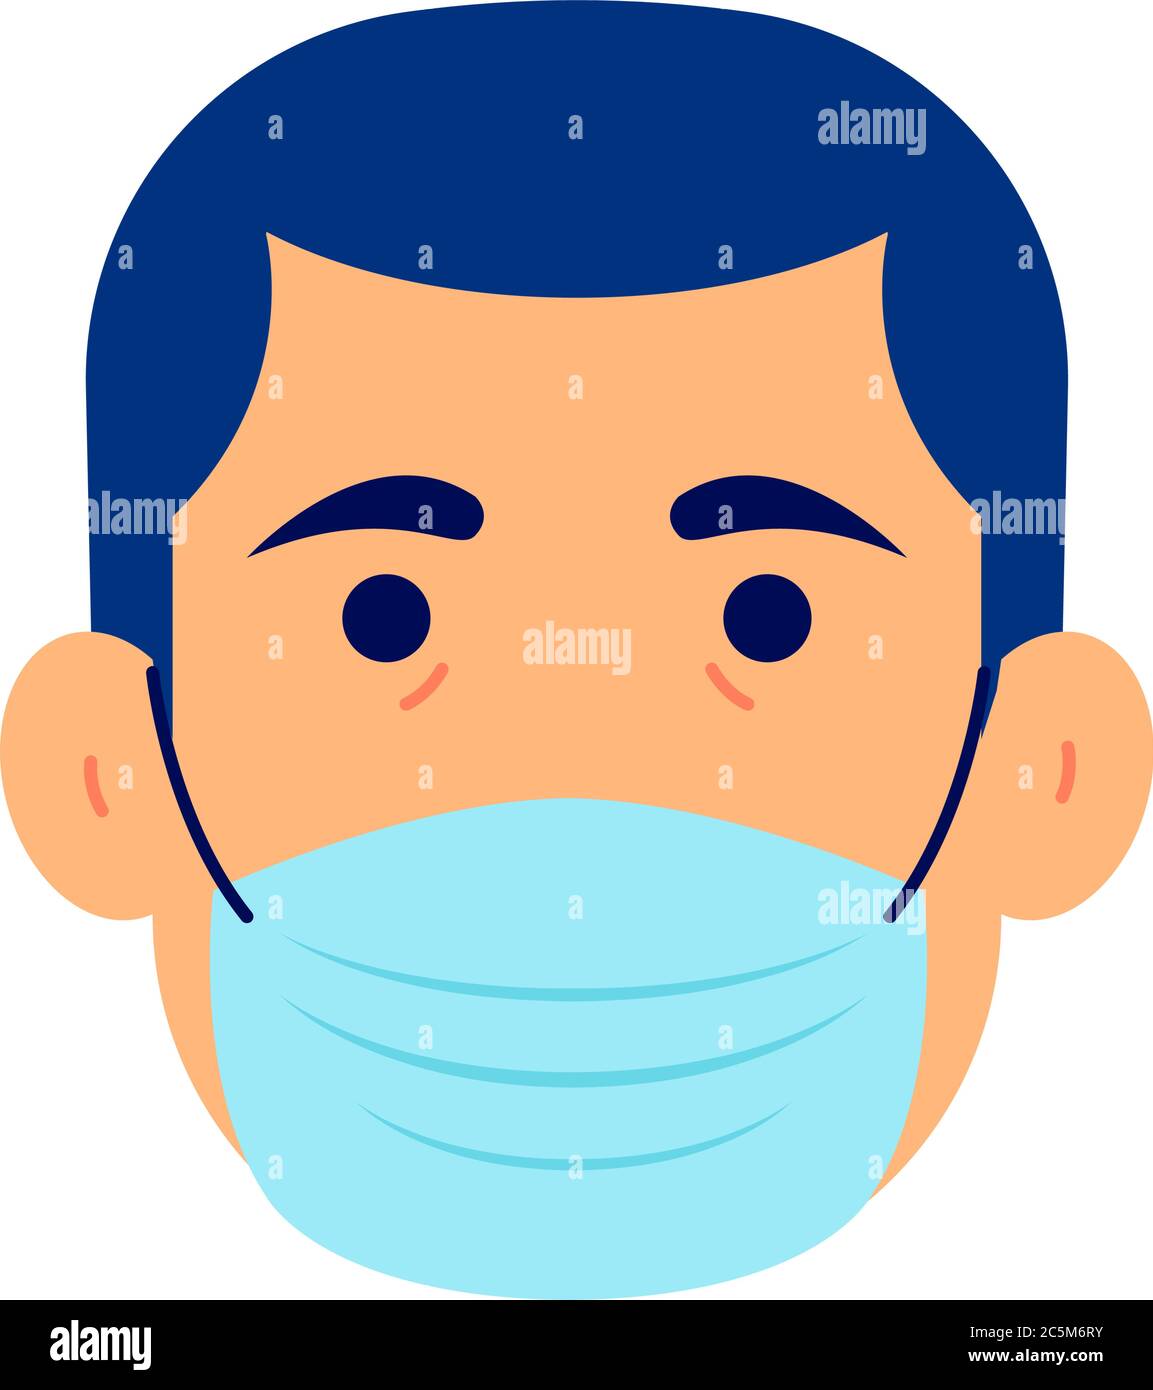 Uomo in respirazione maschera medica respiratoria. Maschera facciale protettiva per l'ospedale o l'inquinamento. Buon aiuto COVID-19 Coronavirus. Illustrazione Vettoriale